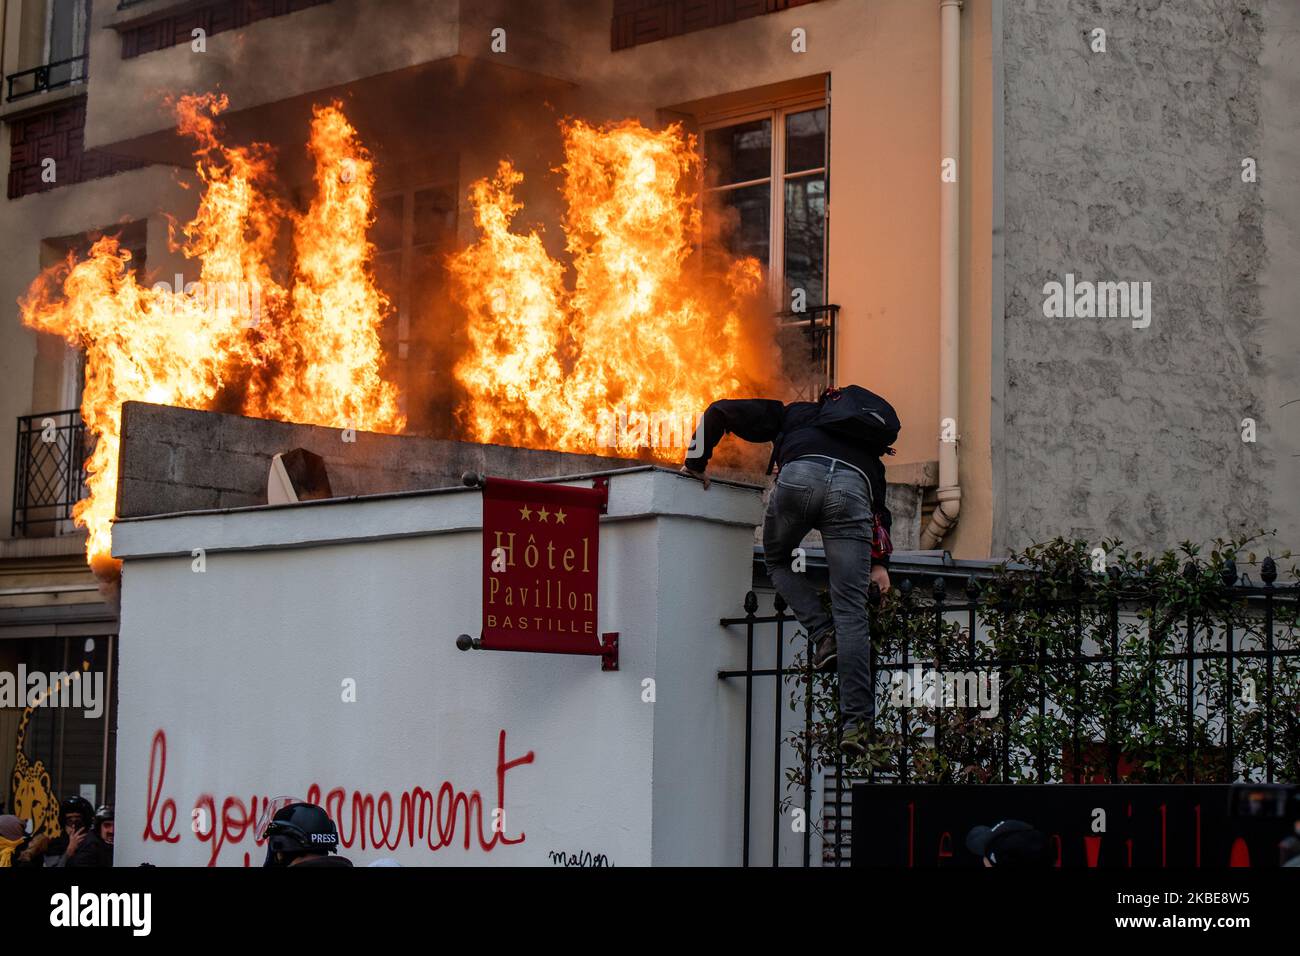 Una cartelera publicitaria está ardiendo durante una manifestación en París, el 11 de enero de 2020, como parte de una huelga multisectorial nacional contra la reforma de las pensiones del gobierno francés. Foto de stock